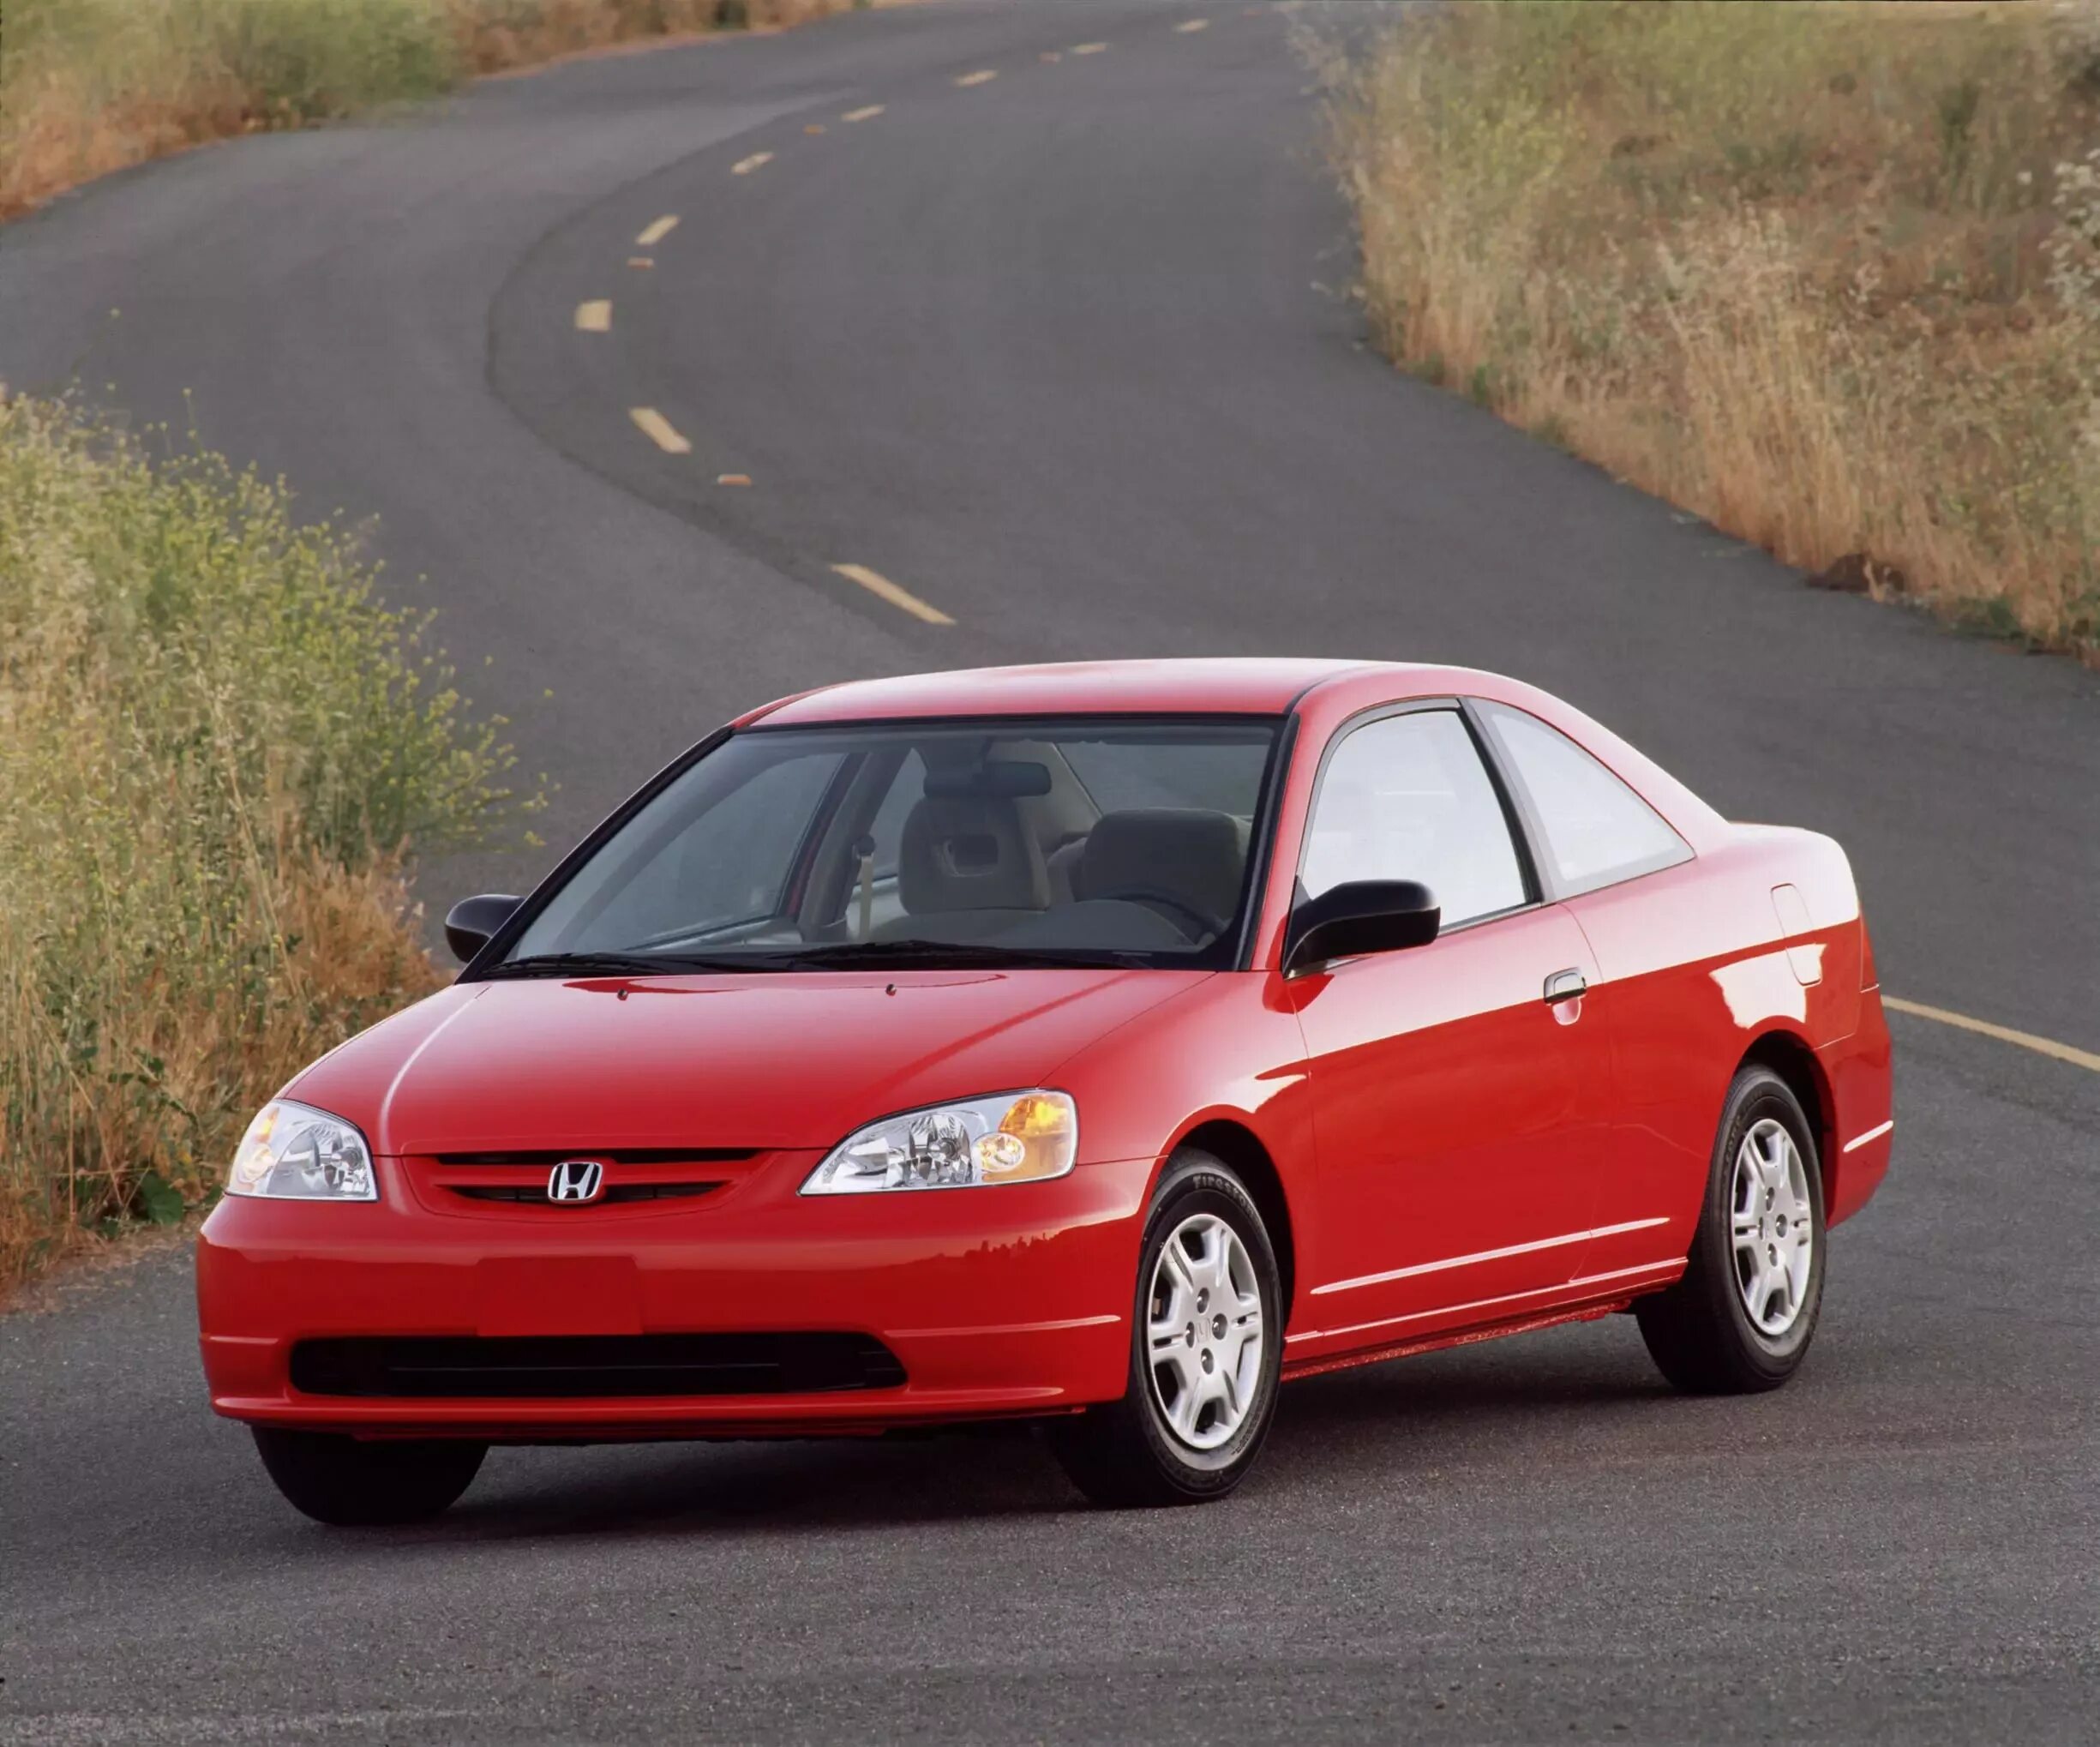 Honda Civic 2001. 2001 Honda Civic LX. Хонда Civic 2001. Хонда Цивик 2001. Хонда цивик 2001 купить